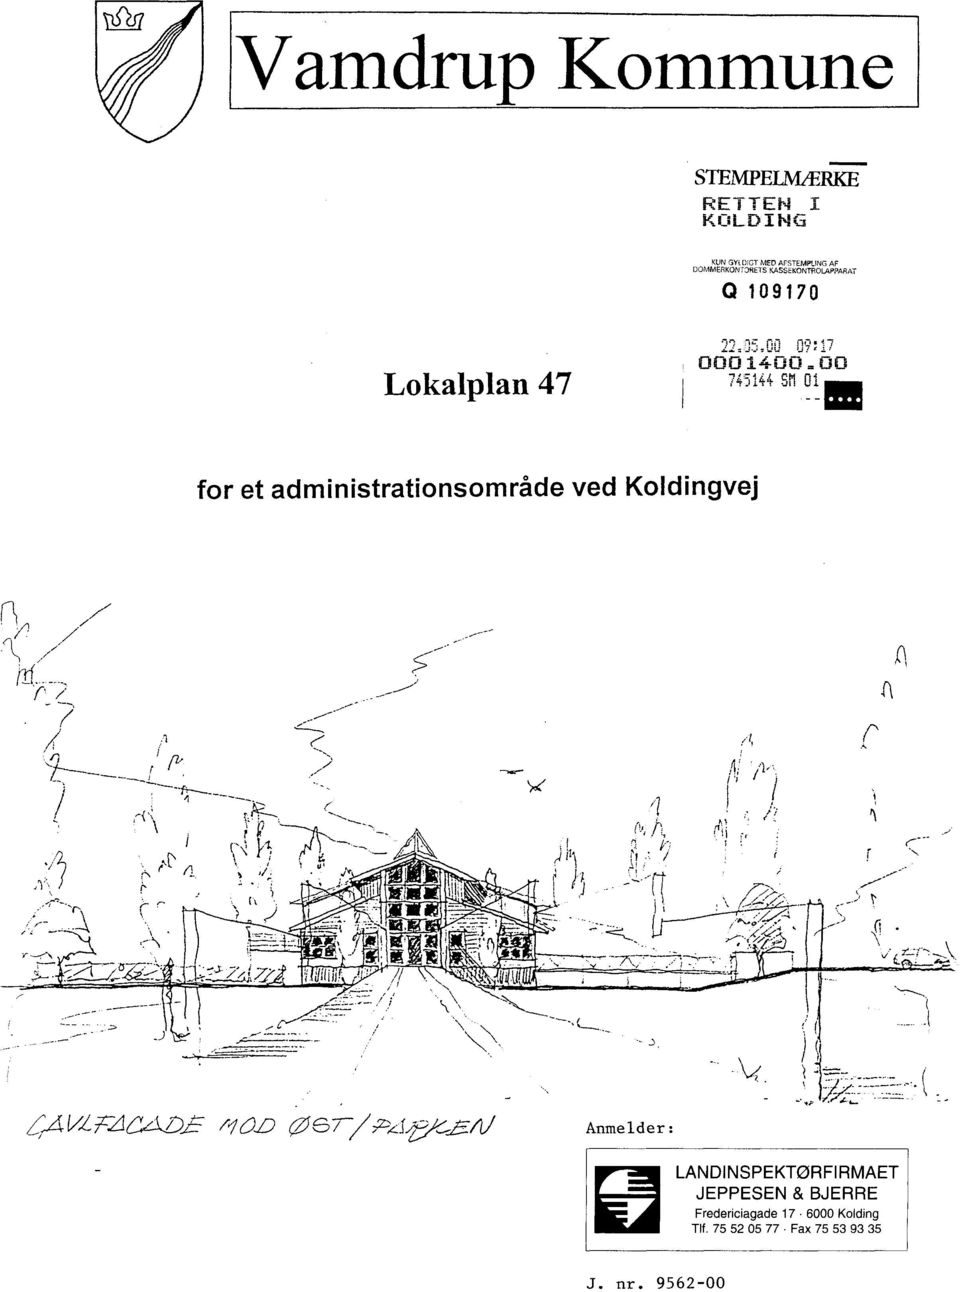 745144 Sil 01 for et administrationsområde ved Koldingvej LANDINSPEKTØRFIRMAET